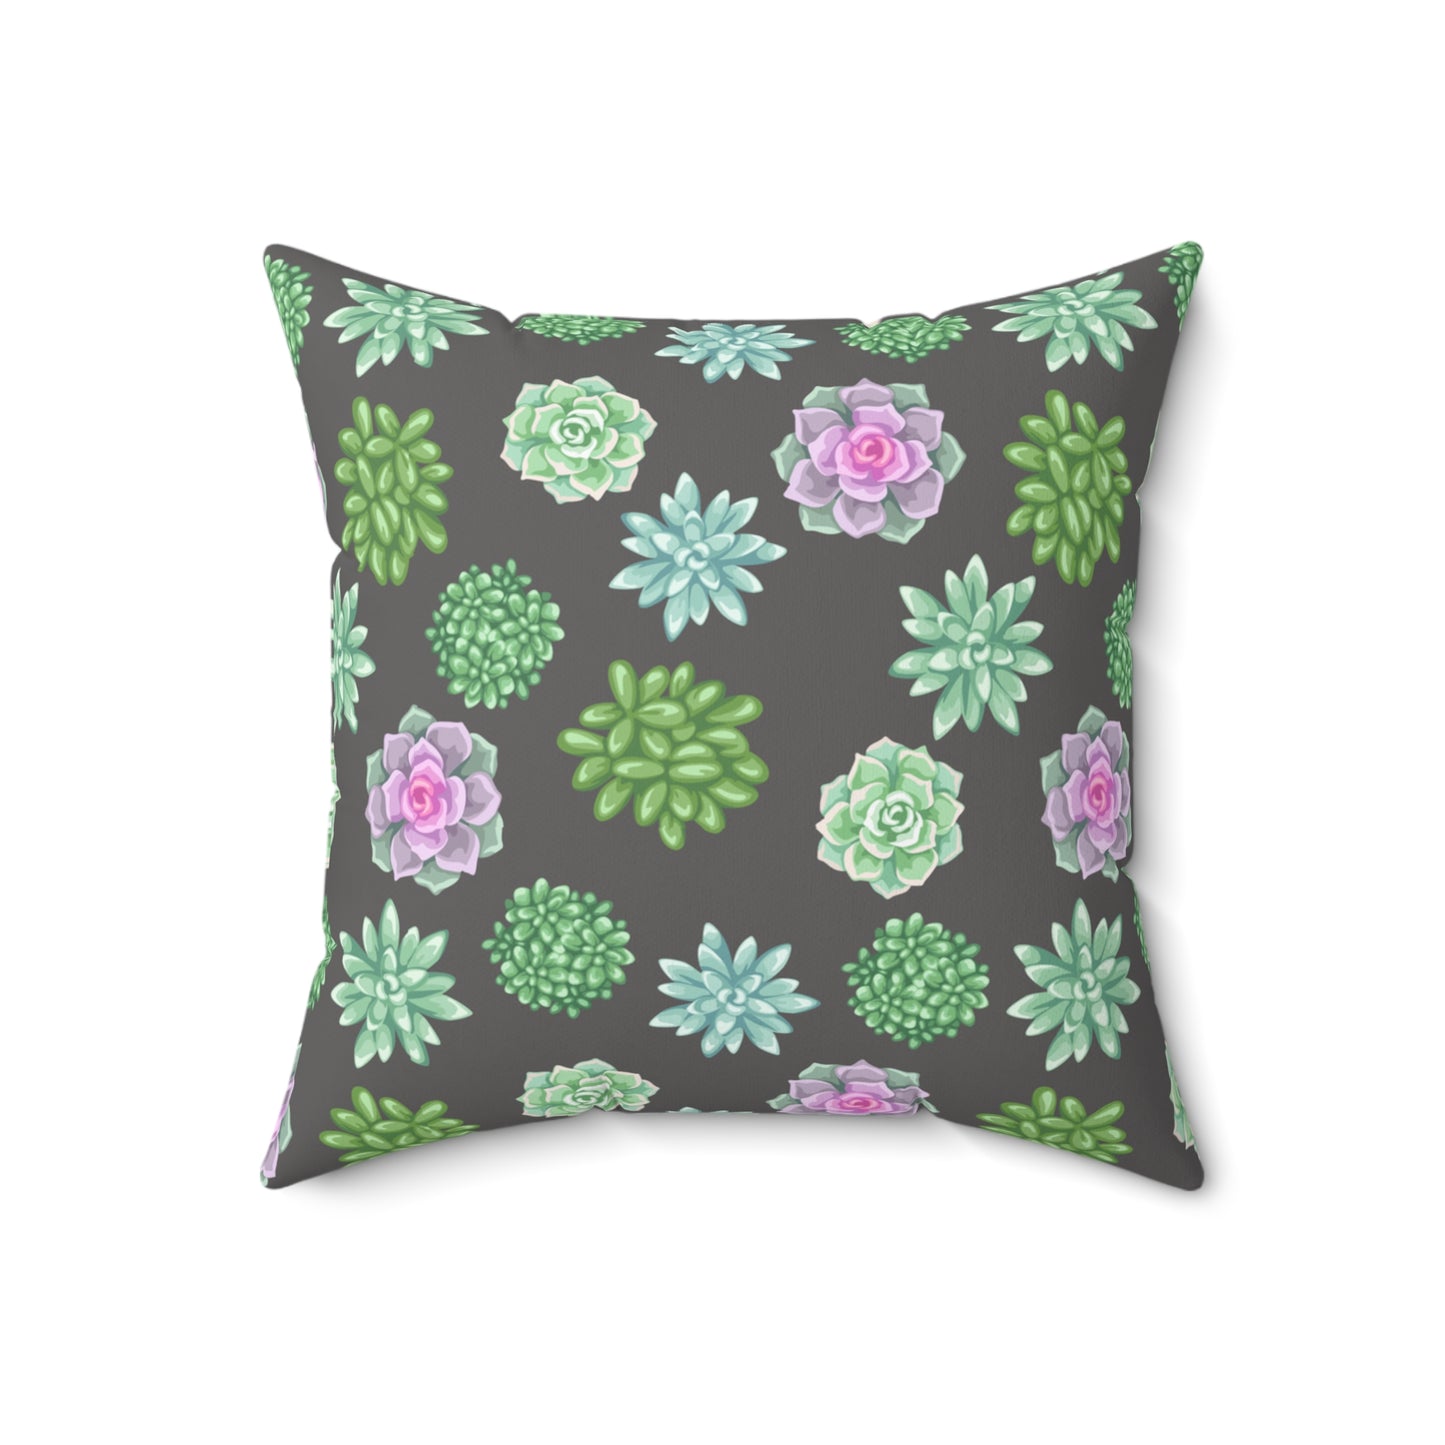 Decorative Succulent Throw Pillow